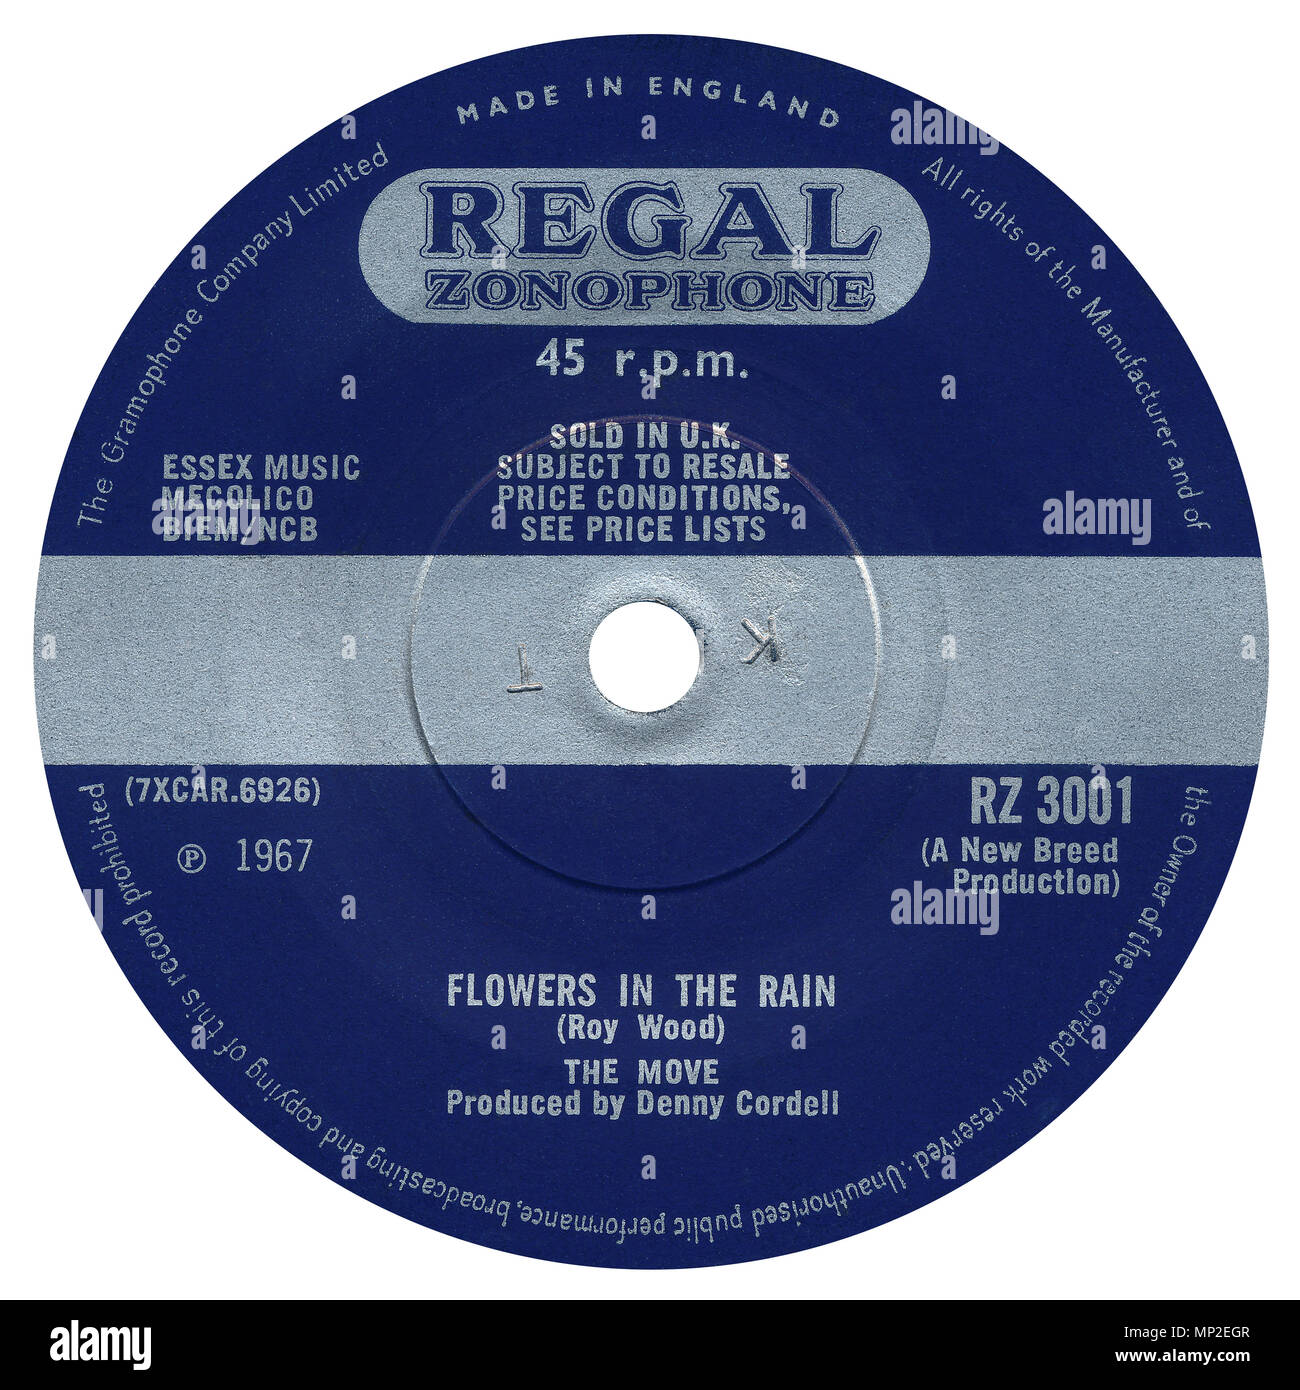 45 RPM discográfica de flores en la lluvia por el movimiento en el Regal Zonophone etiqueta desde 1967. Escrito por Roy Wood y producido por Denny Cordell. Foto de stock